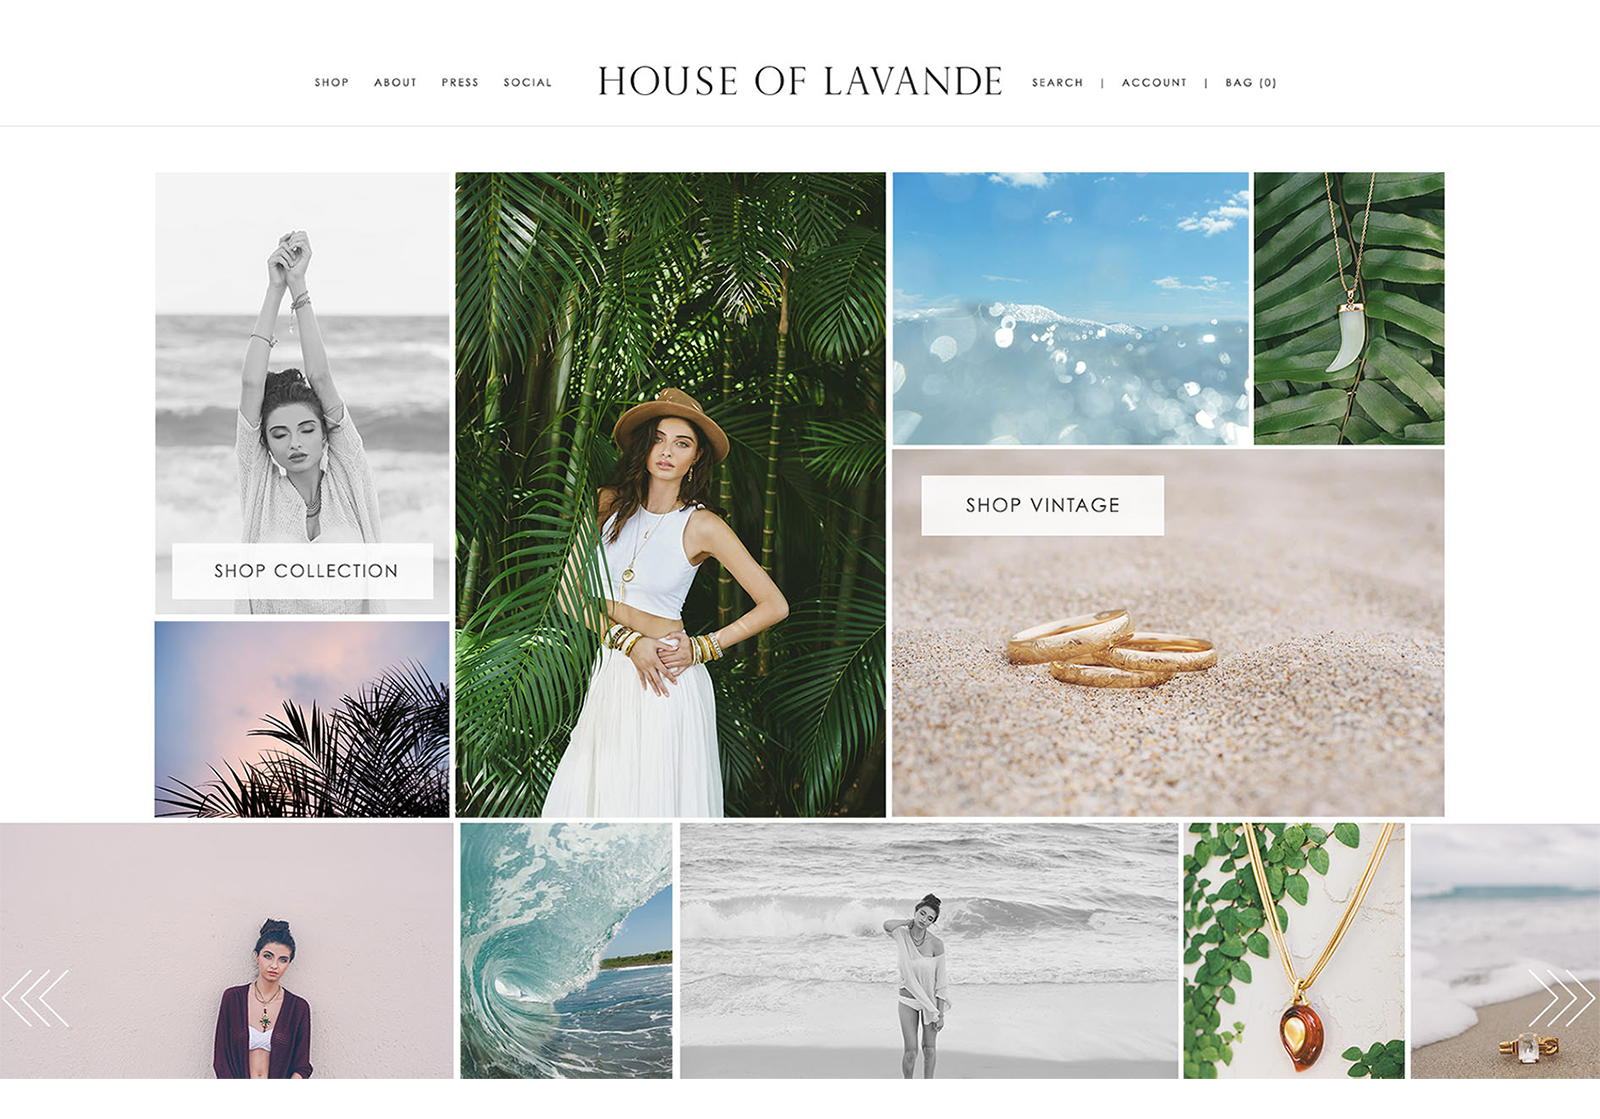 Desktop website mockup for House of Lavande, showing off their landing page.